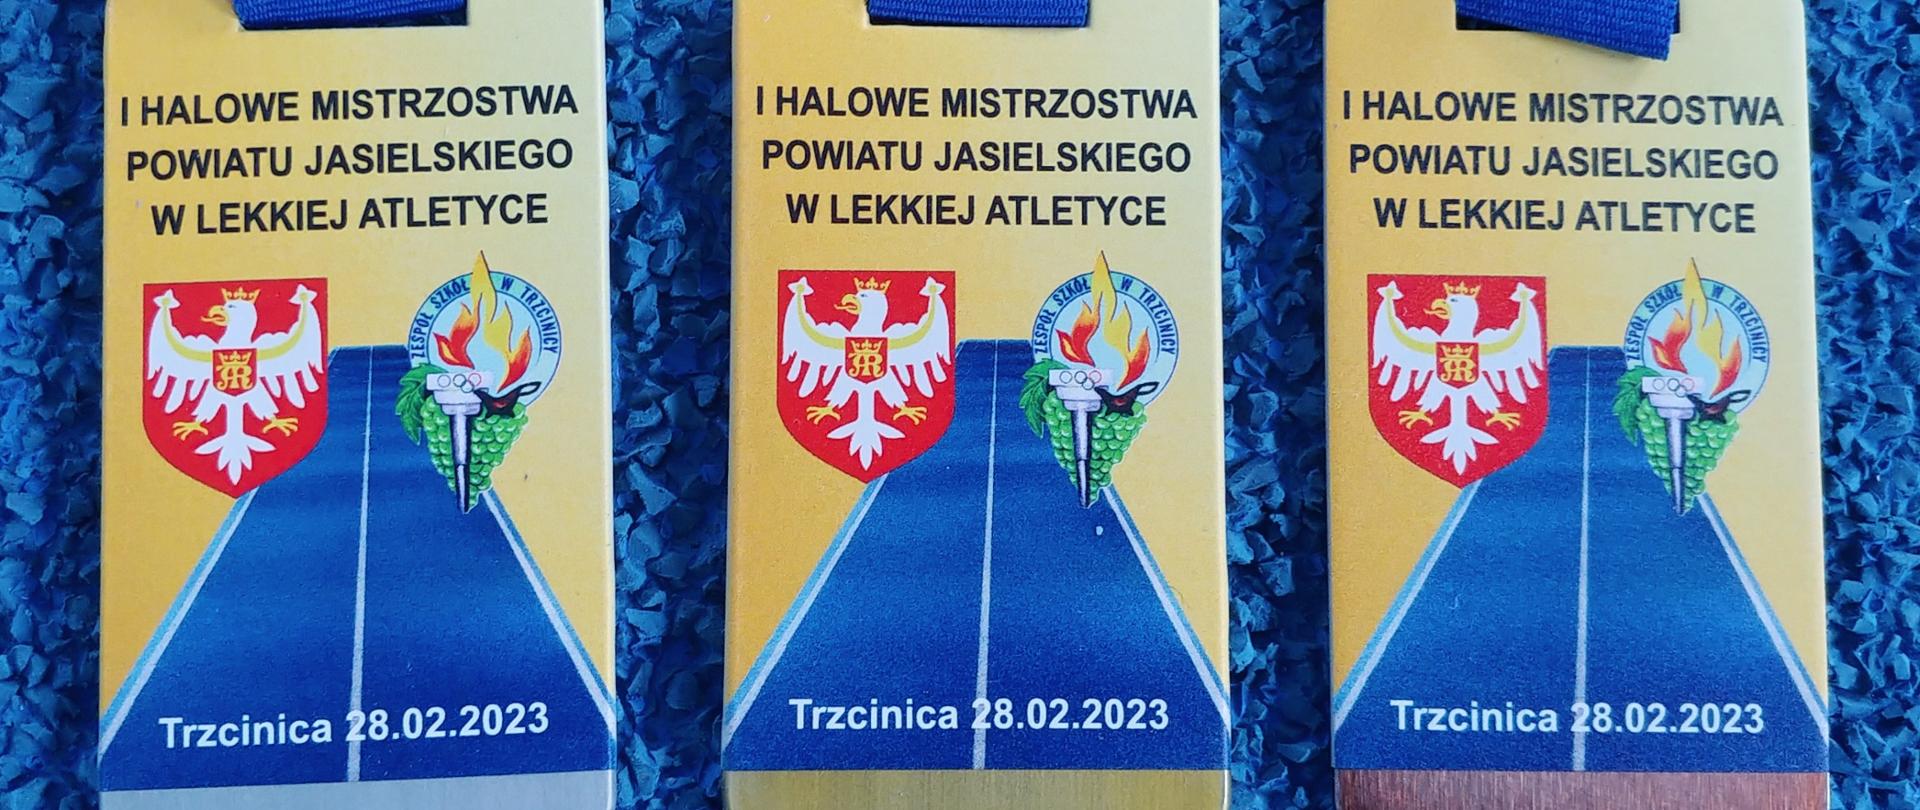 I Halowe Mistrzostwa Powiatu Jasielskiego w Lekkiej Atletyce